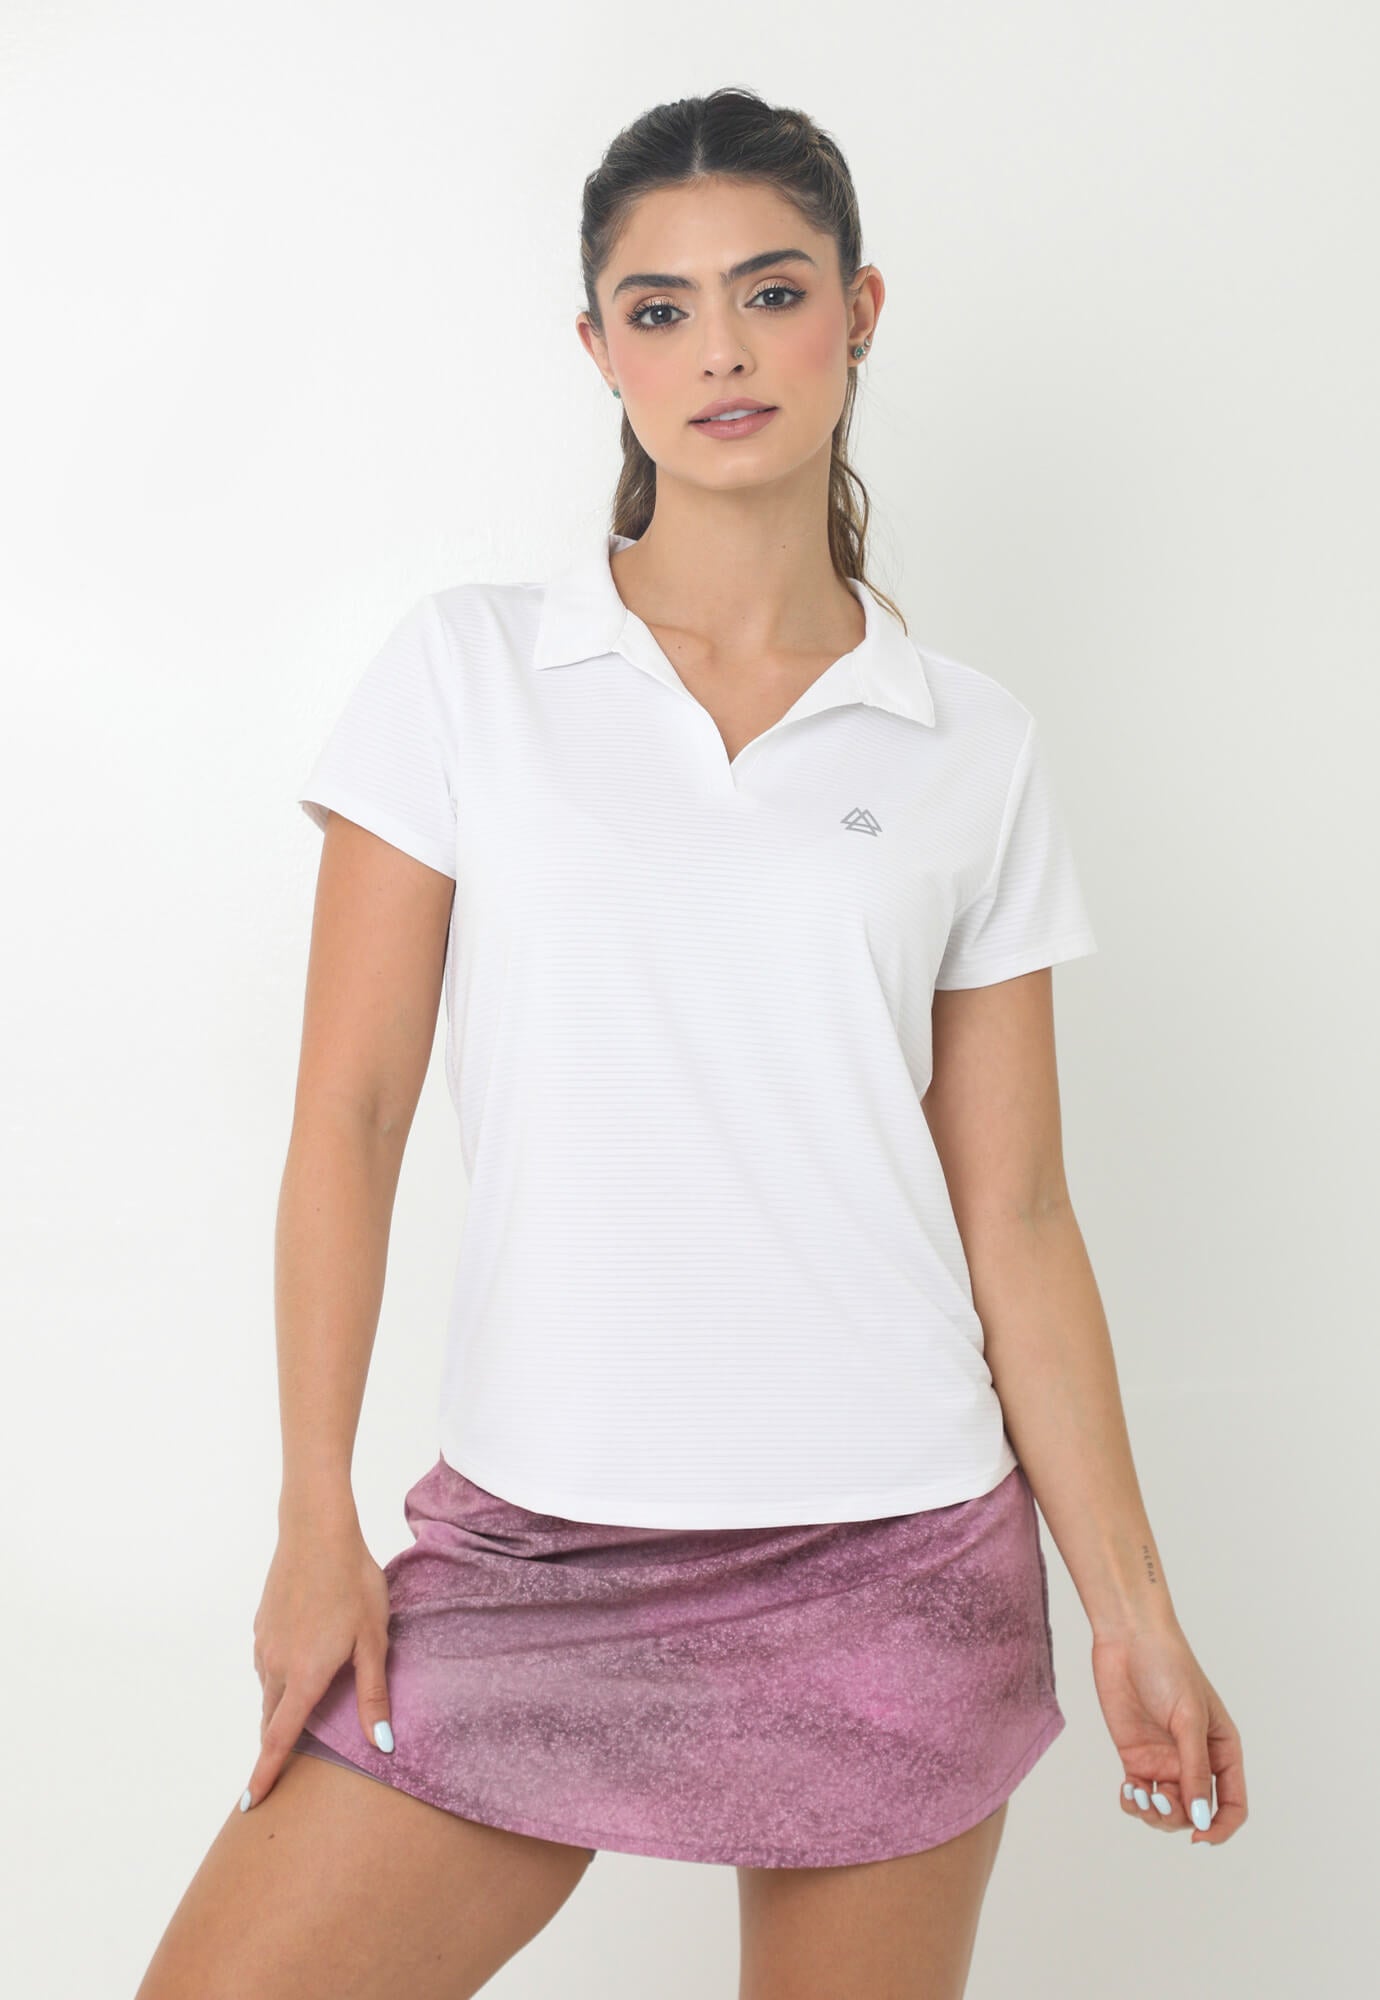 Camiseta deportiva blanca tipo polo, cuello camisero y transfer reflectivo en frente para mujer